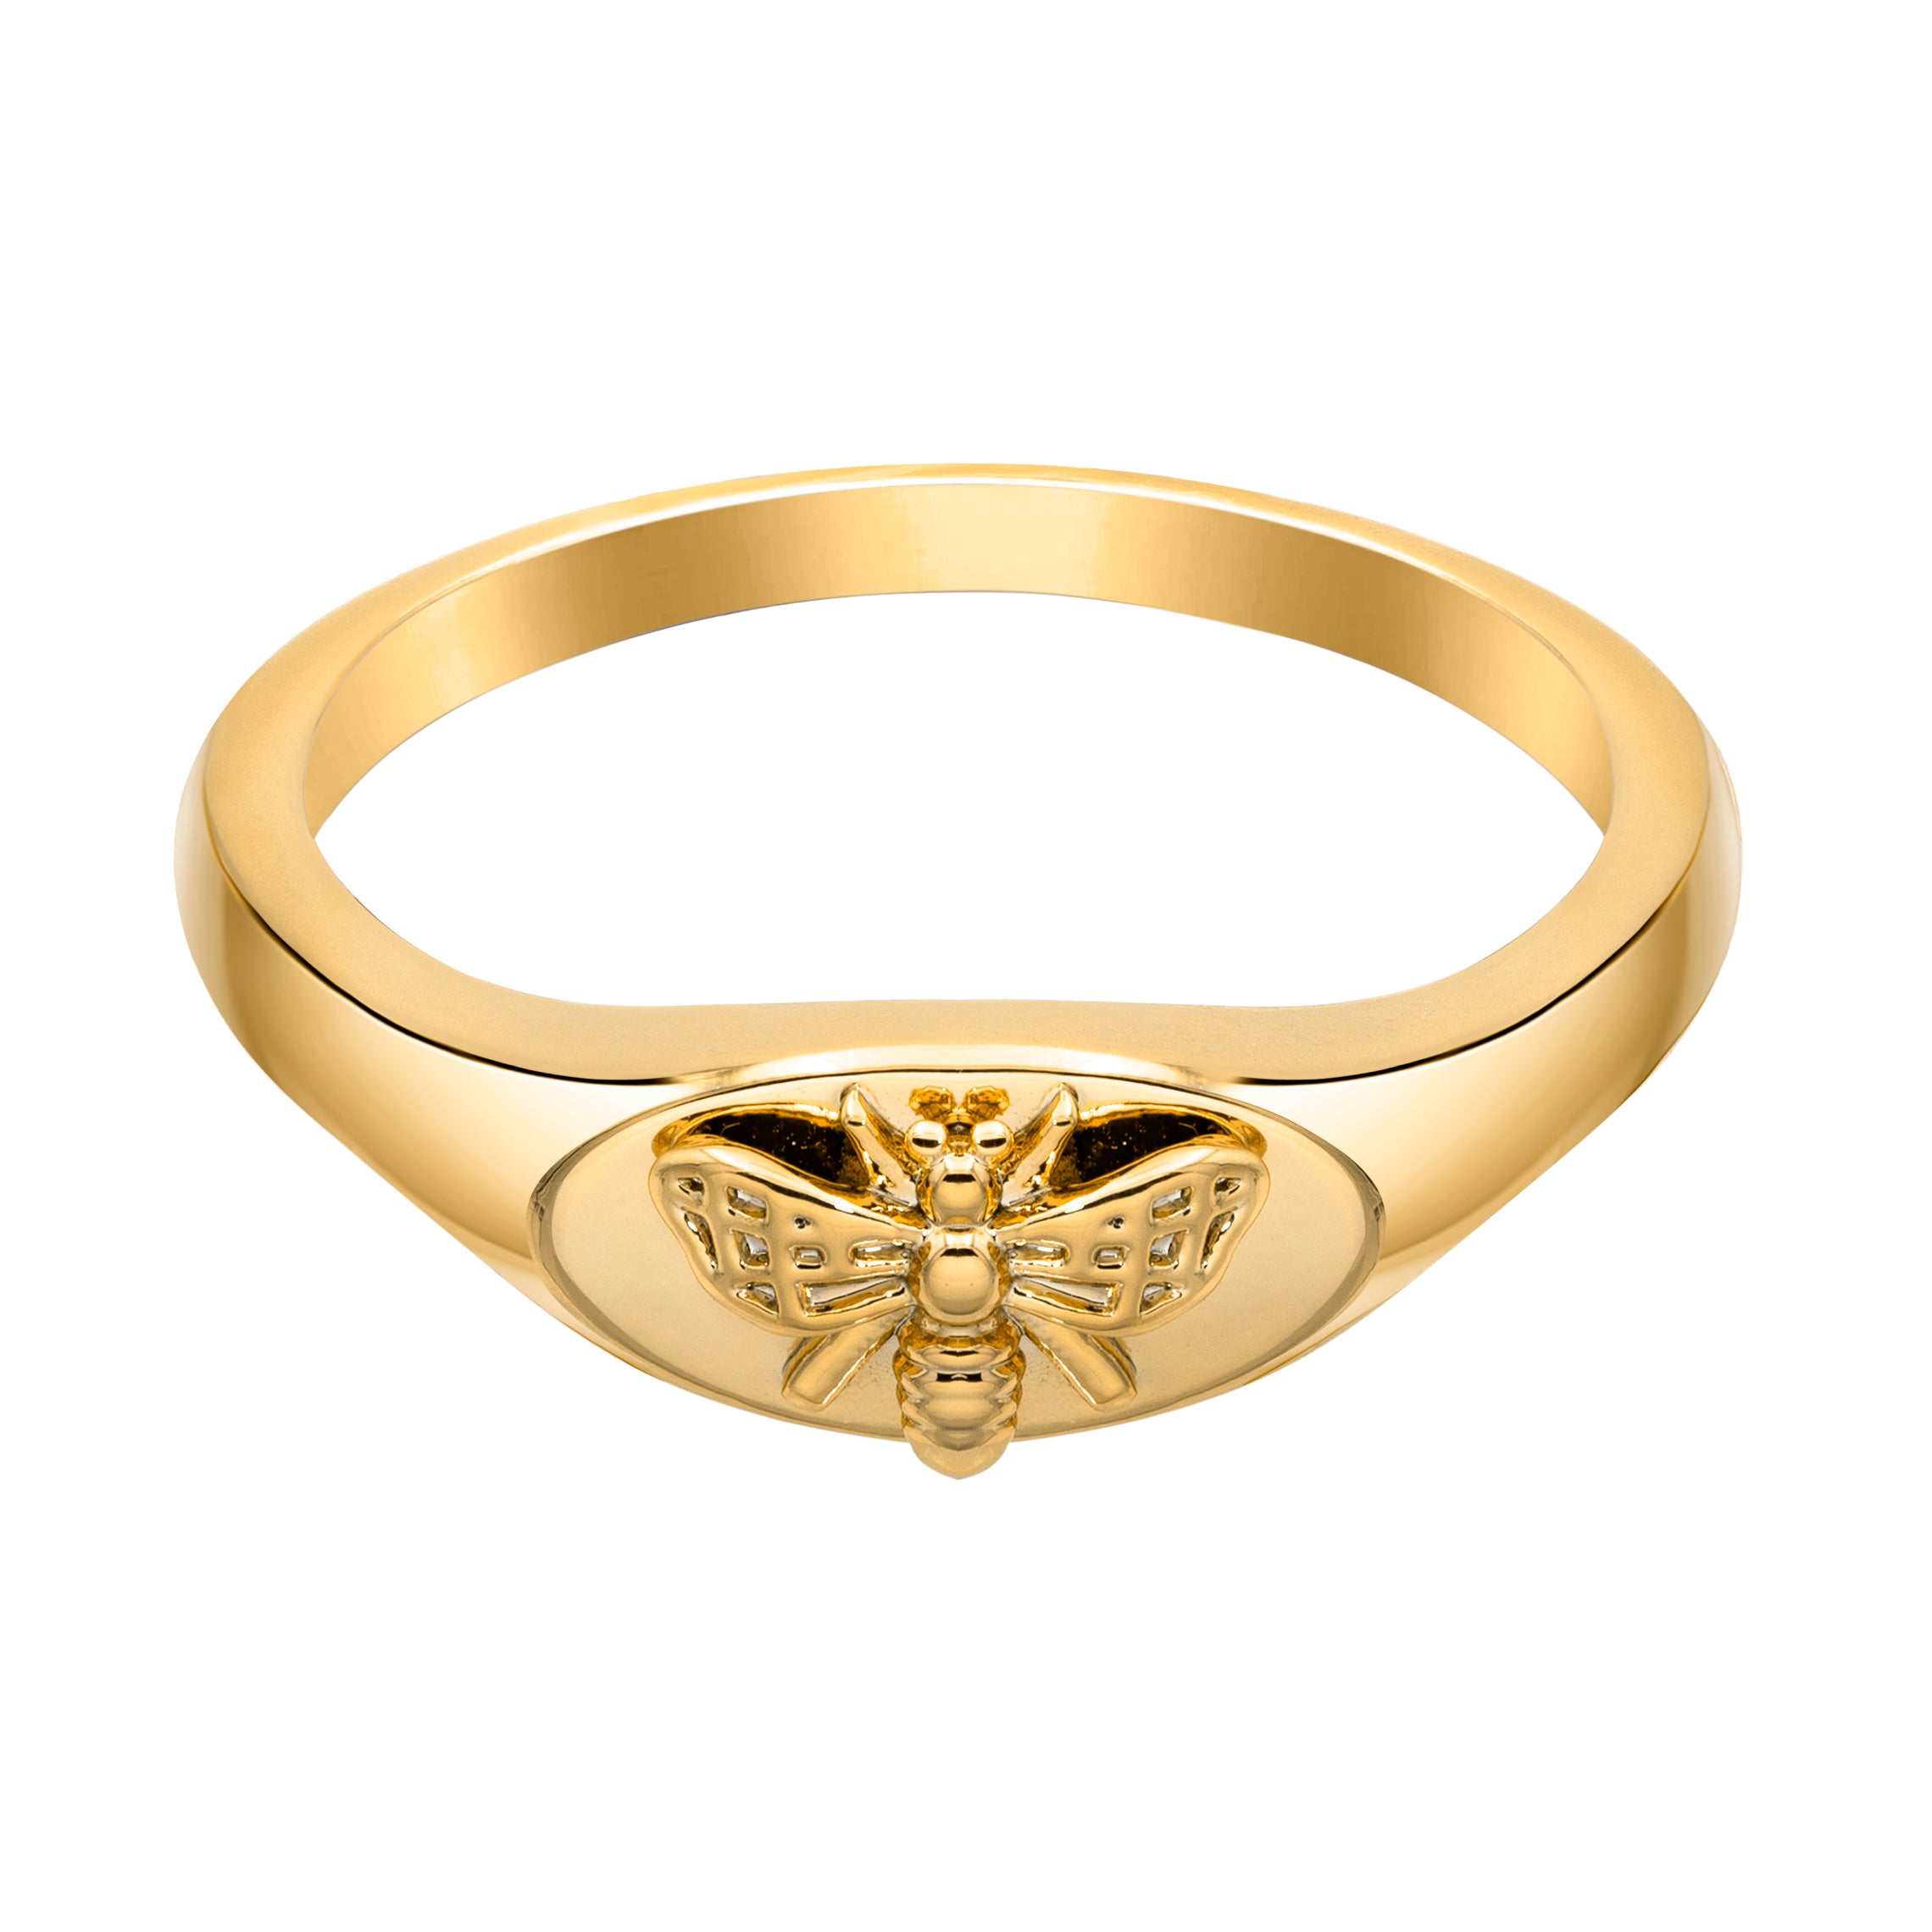 Buy Golden Rings Online | Gold Rings for Women